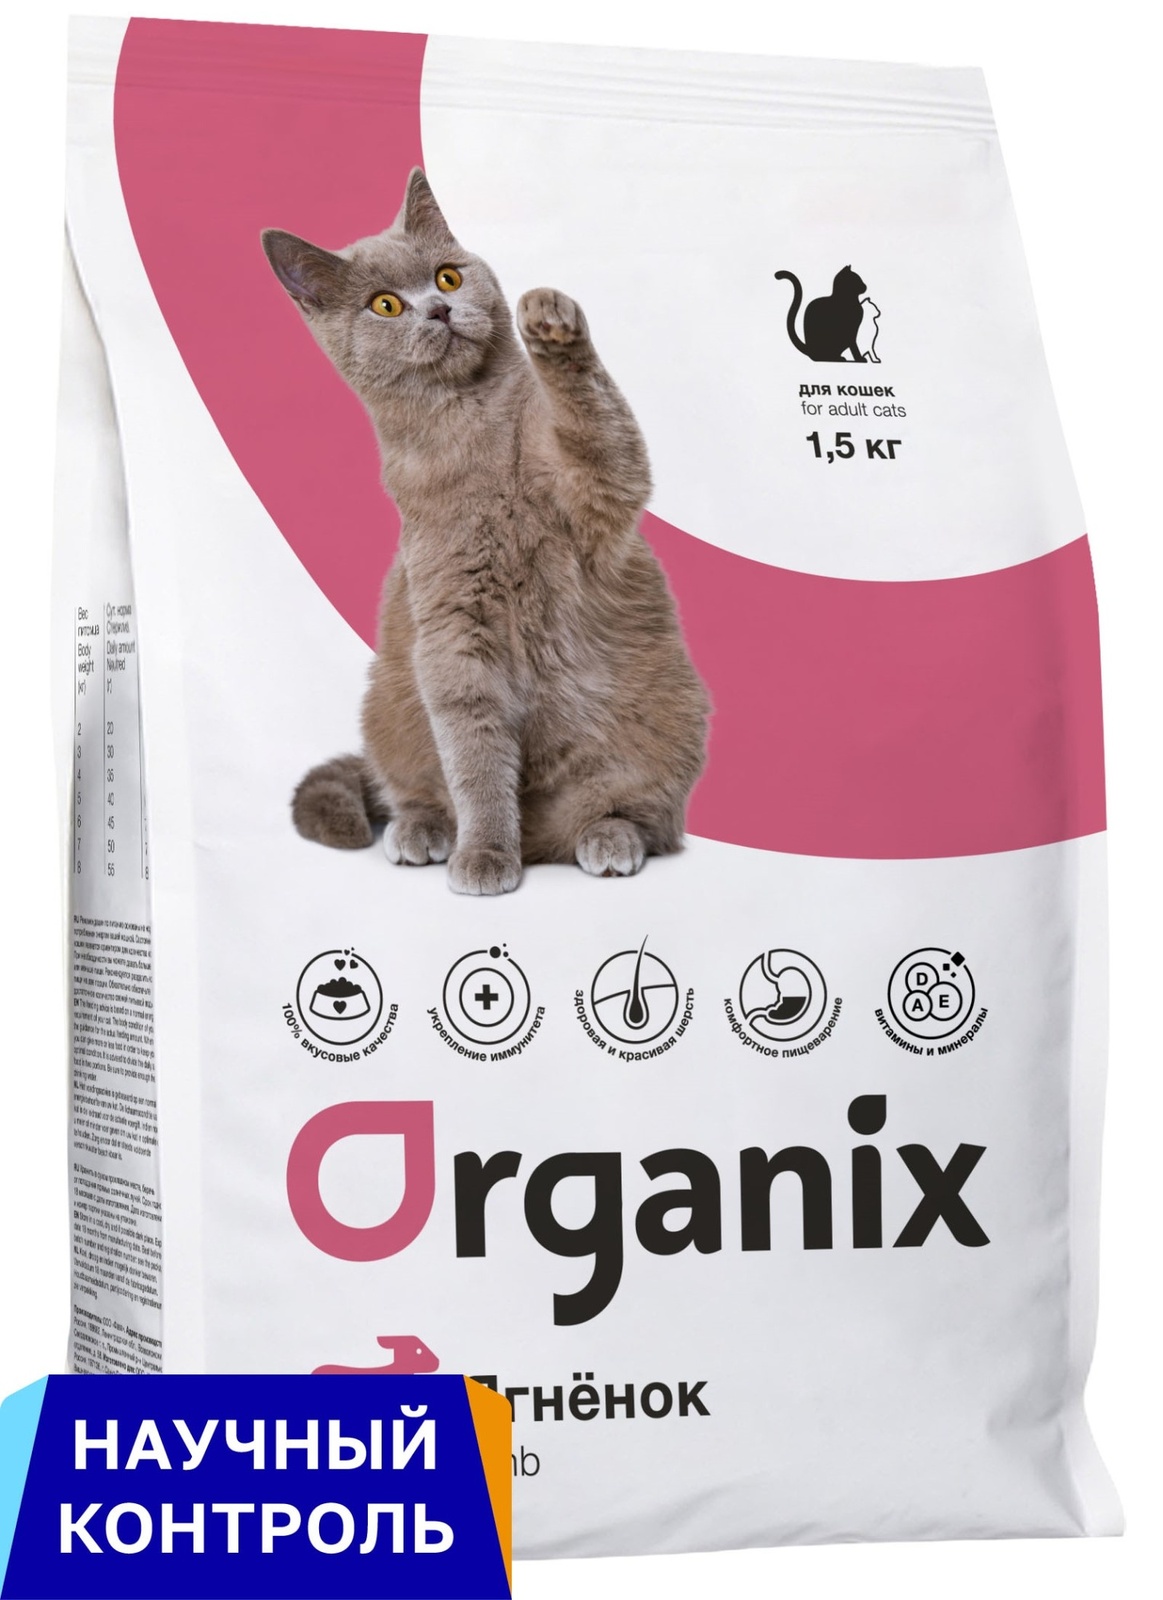 Organix  сухой корм для кошек, с ягненком (18 кг) Organix  сухой корм для кошек, с ягненком (18 кг) - фото 1